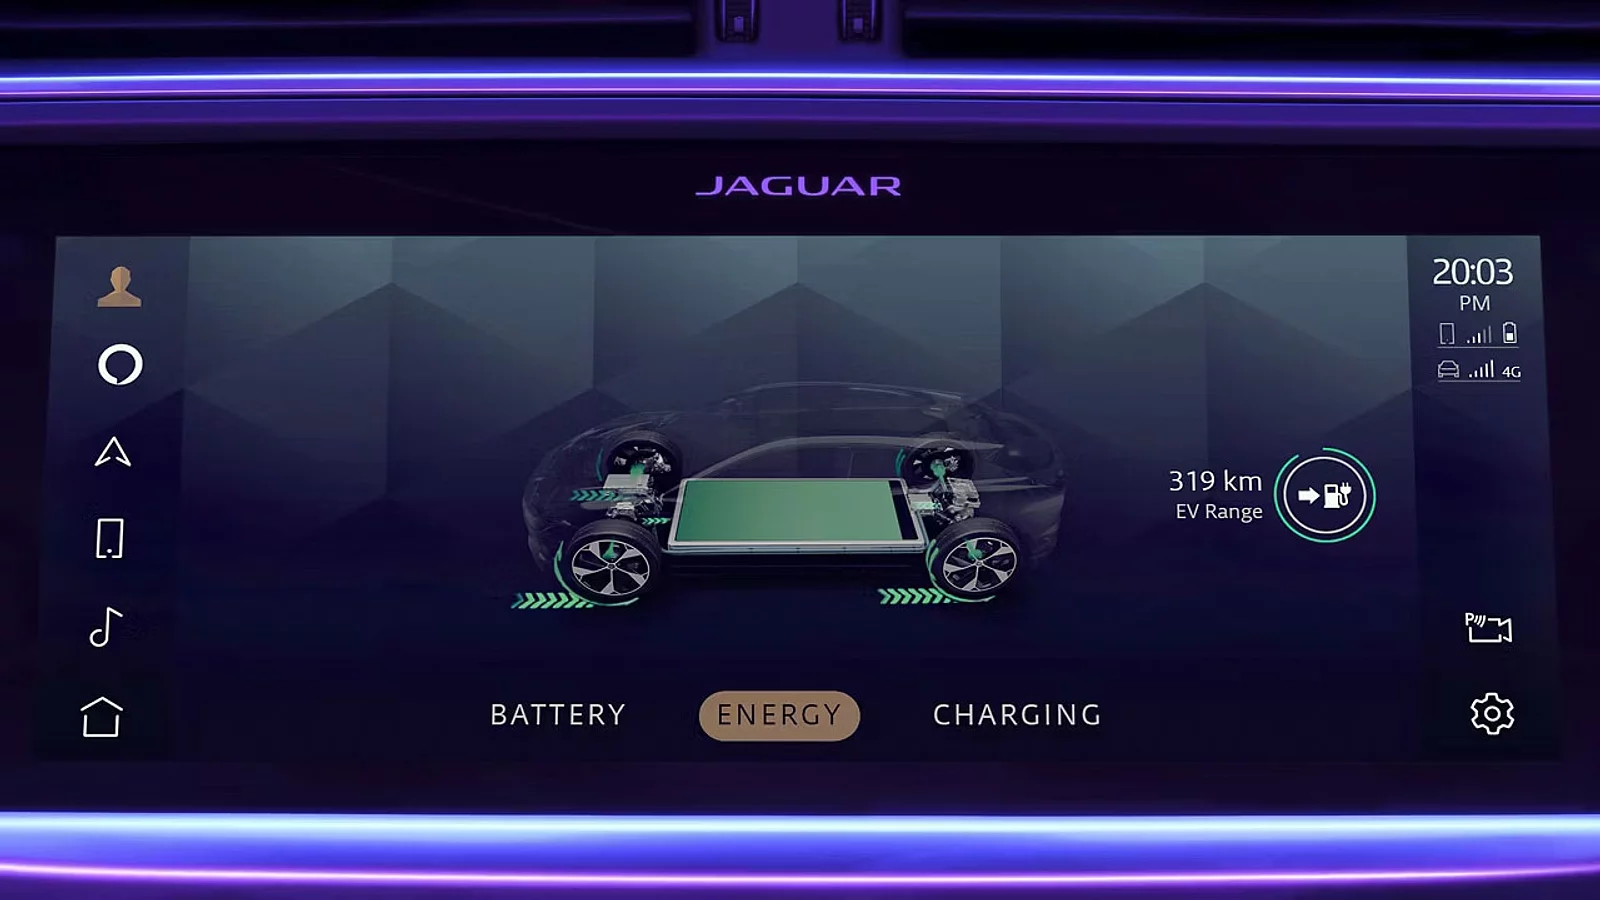 Jaguar infotainment touch screen display